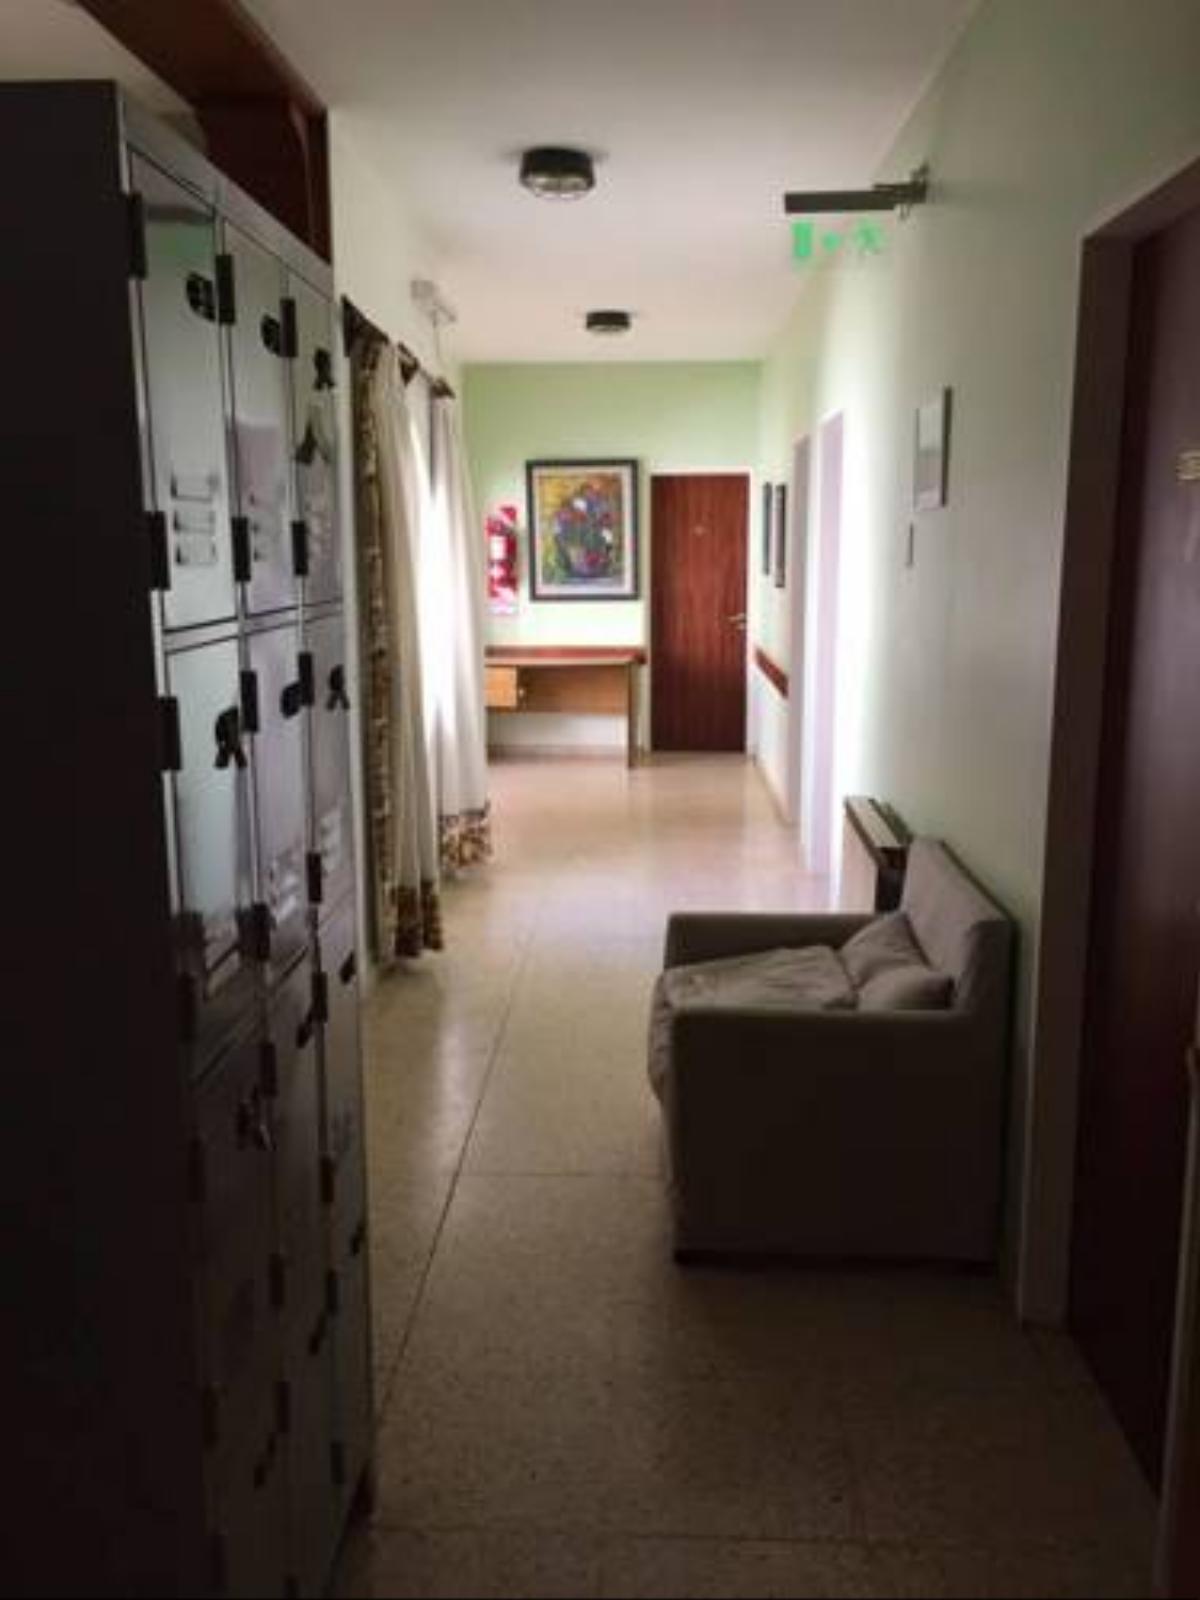 Habitaciones de alquiler Hotel Comodoro Rivadavia Argentina